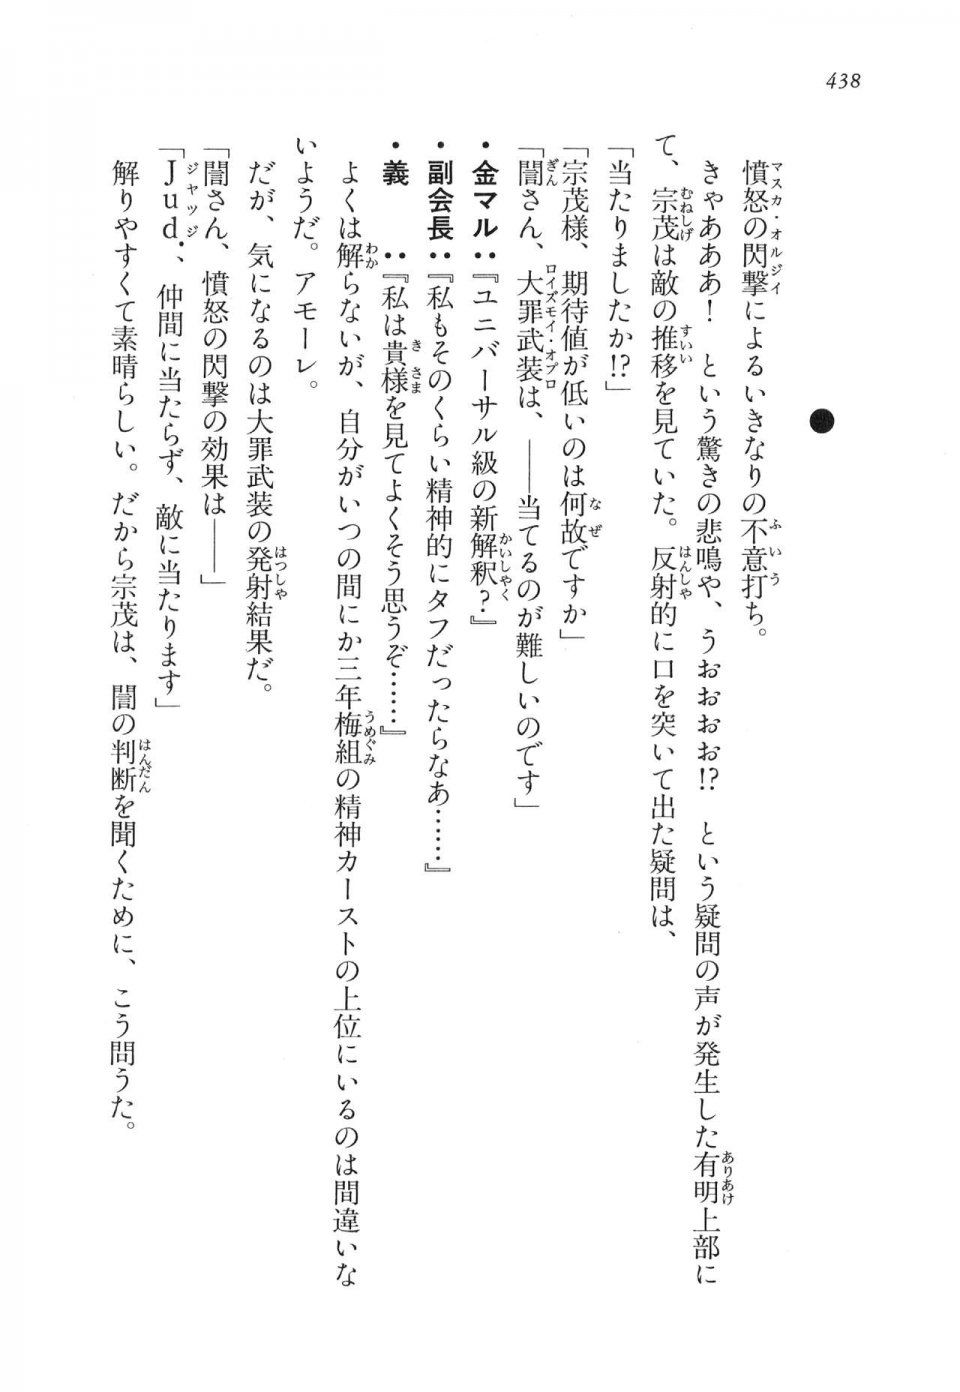 Kyoukai Senjou no Horizon LN Vol 11(5A) - Photo #438